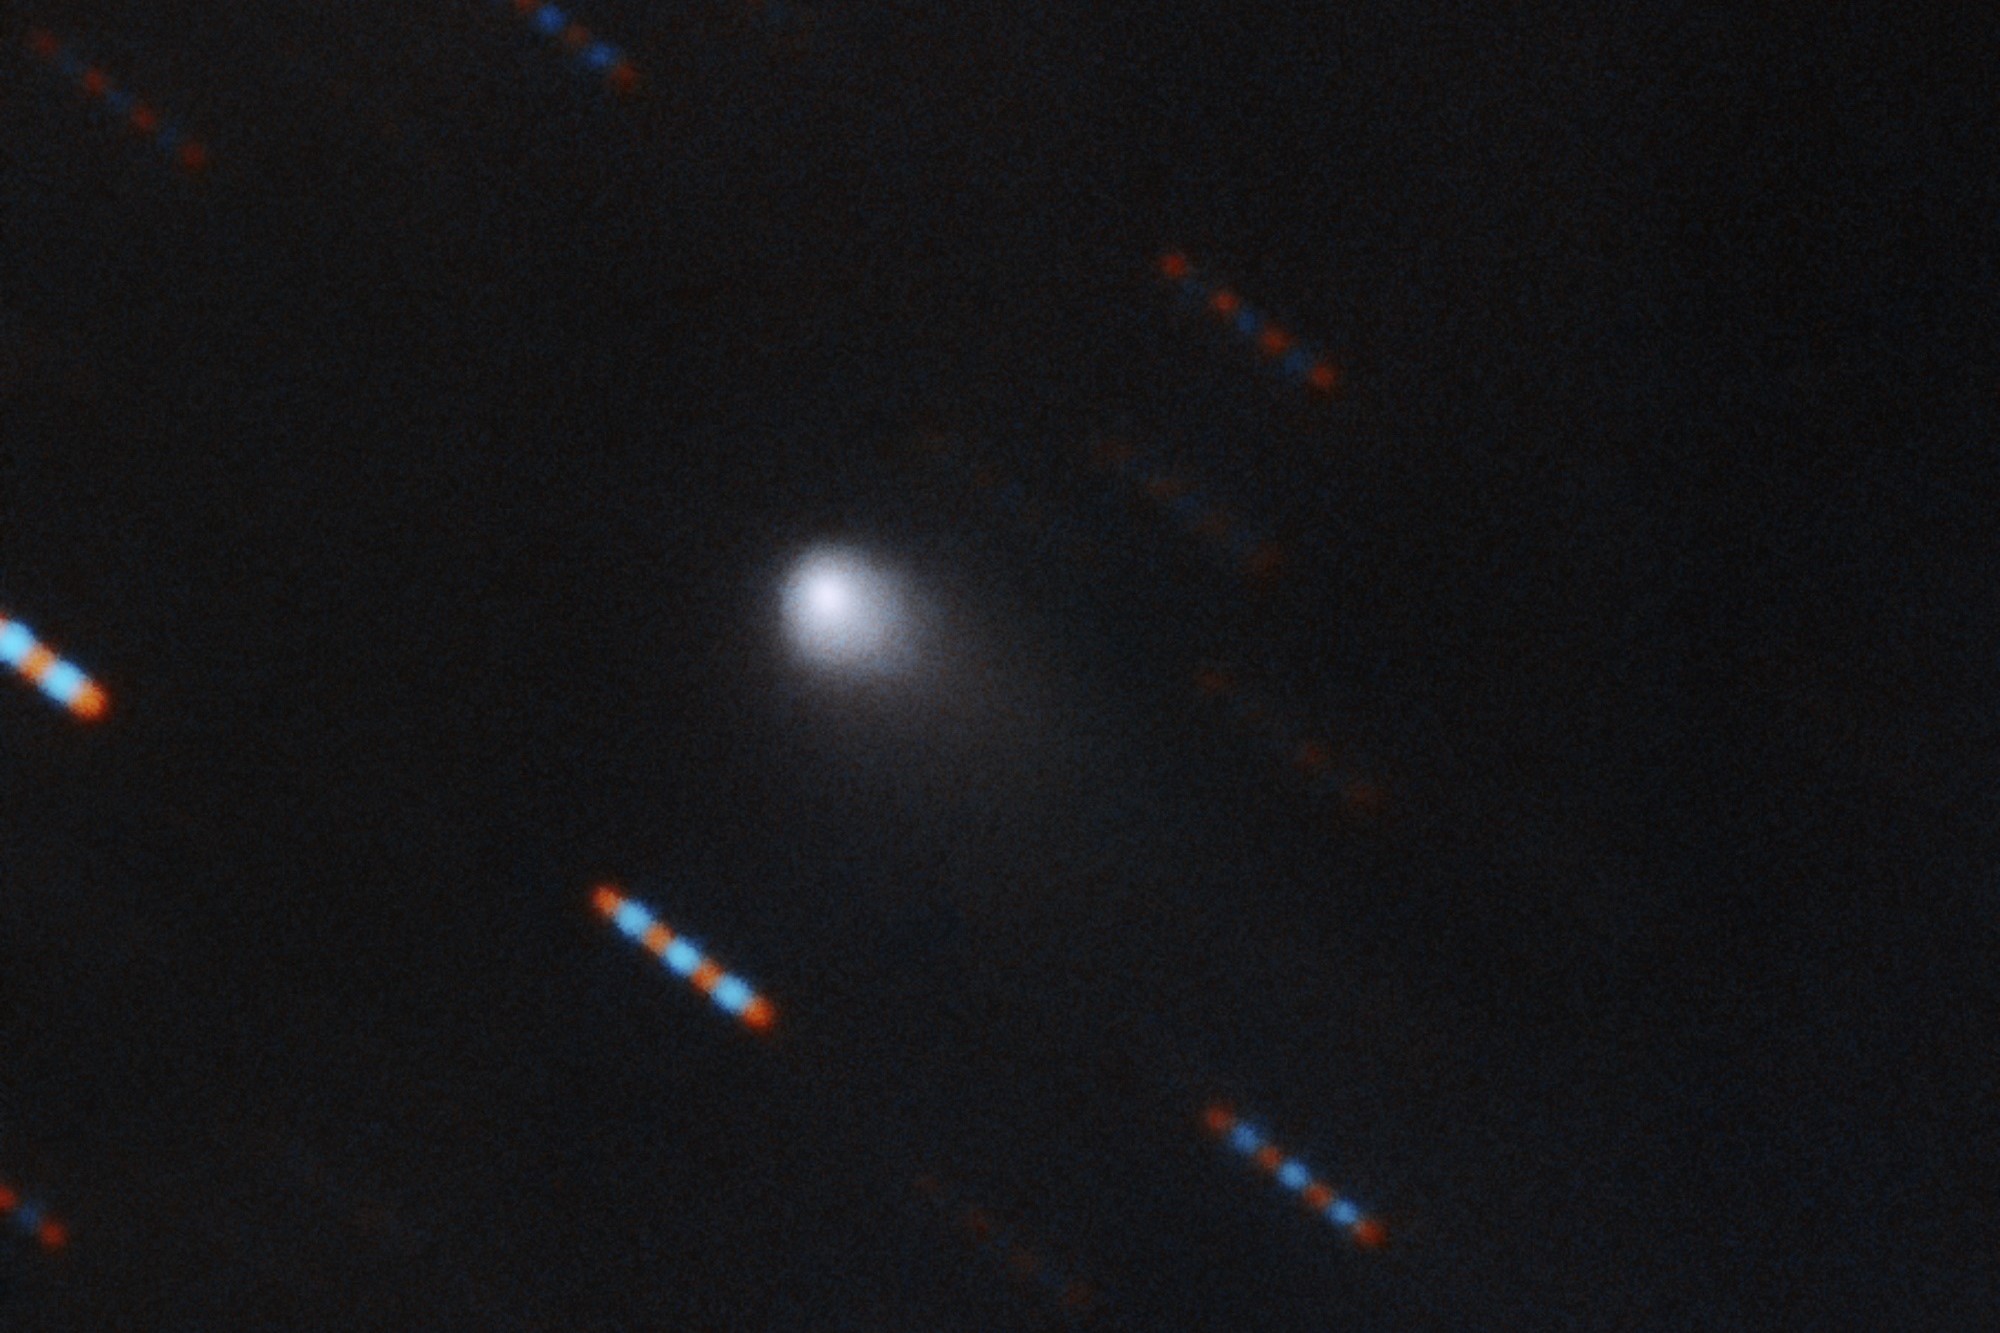 Borisov Interstellar Comet